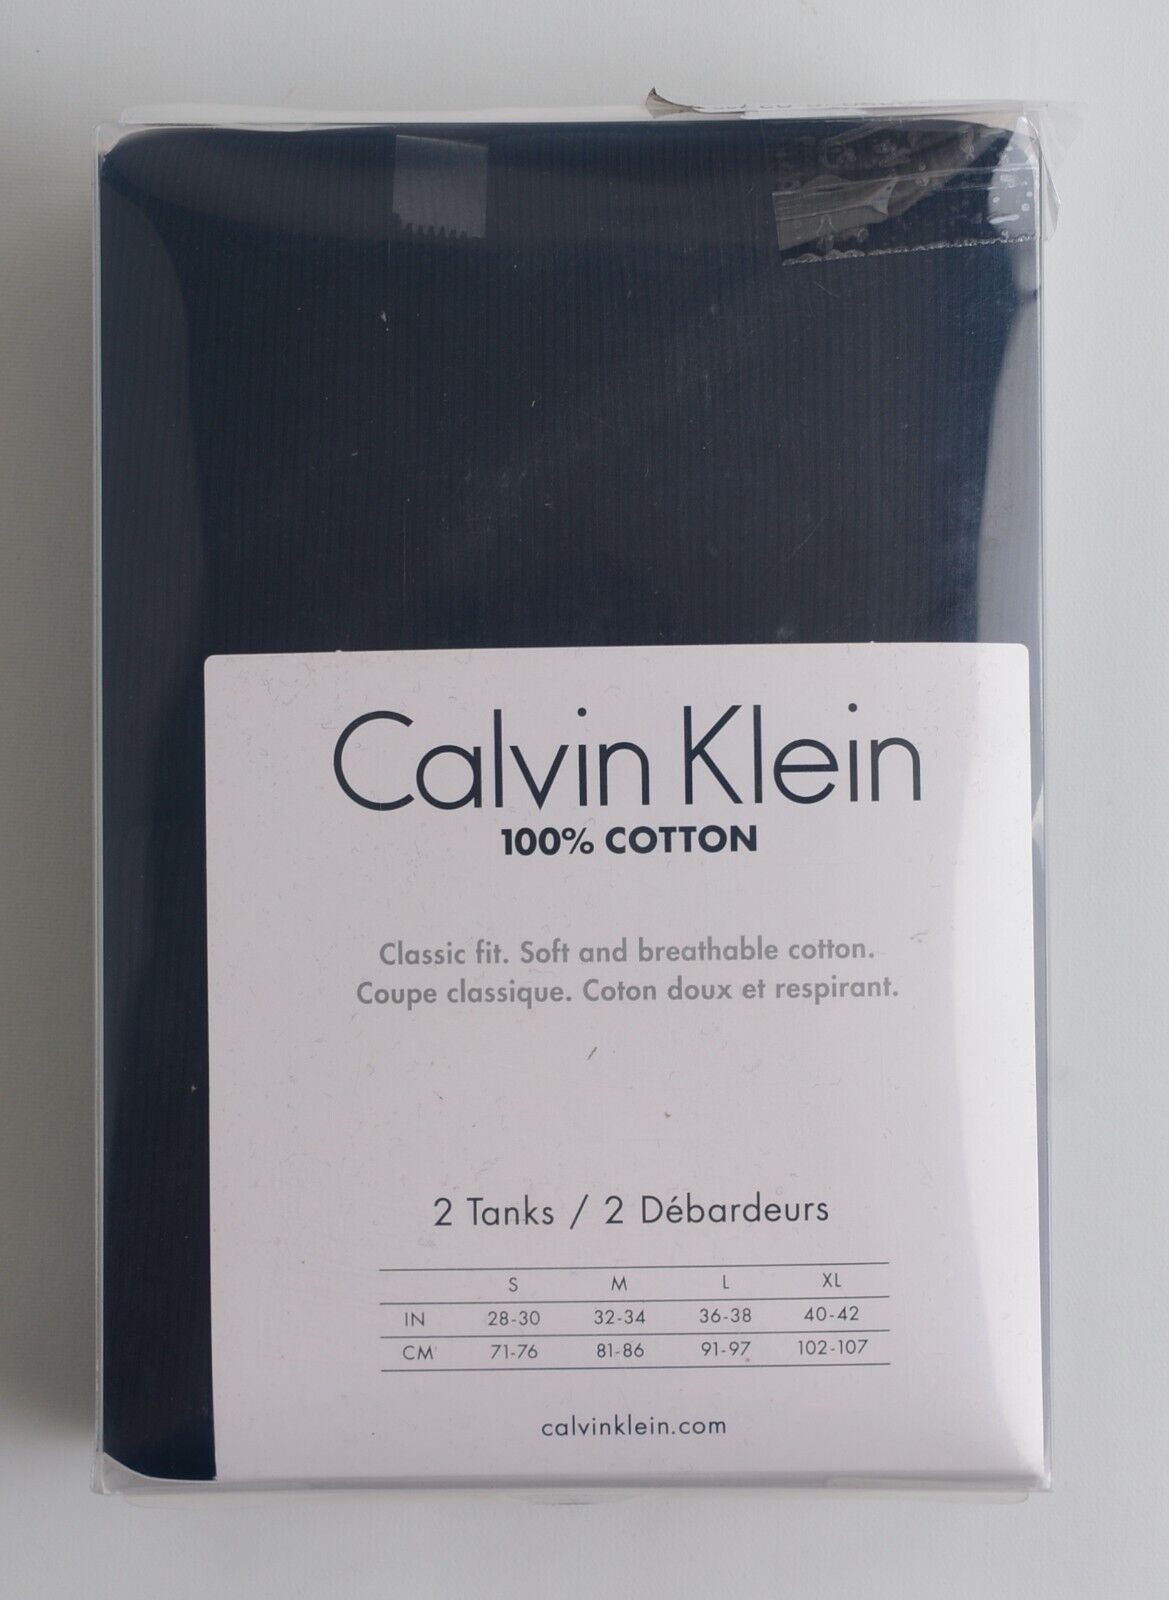 CALVIN KLEIN Men's 2-Pack Black Tank Tops, 100% Cotton, Vests, size S